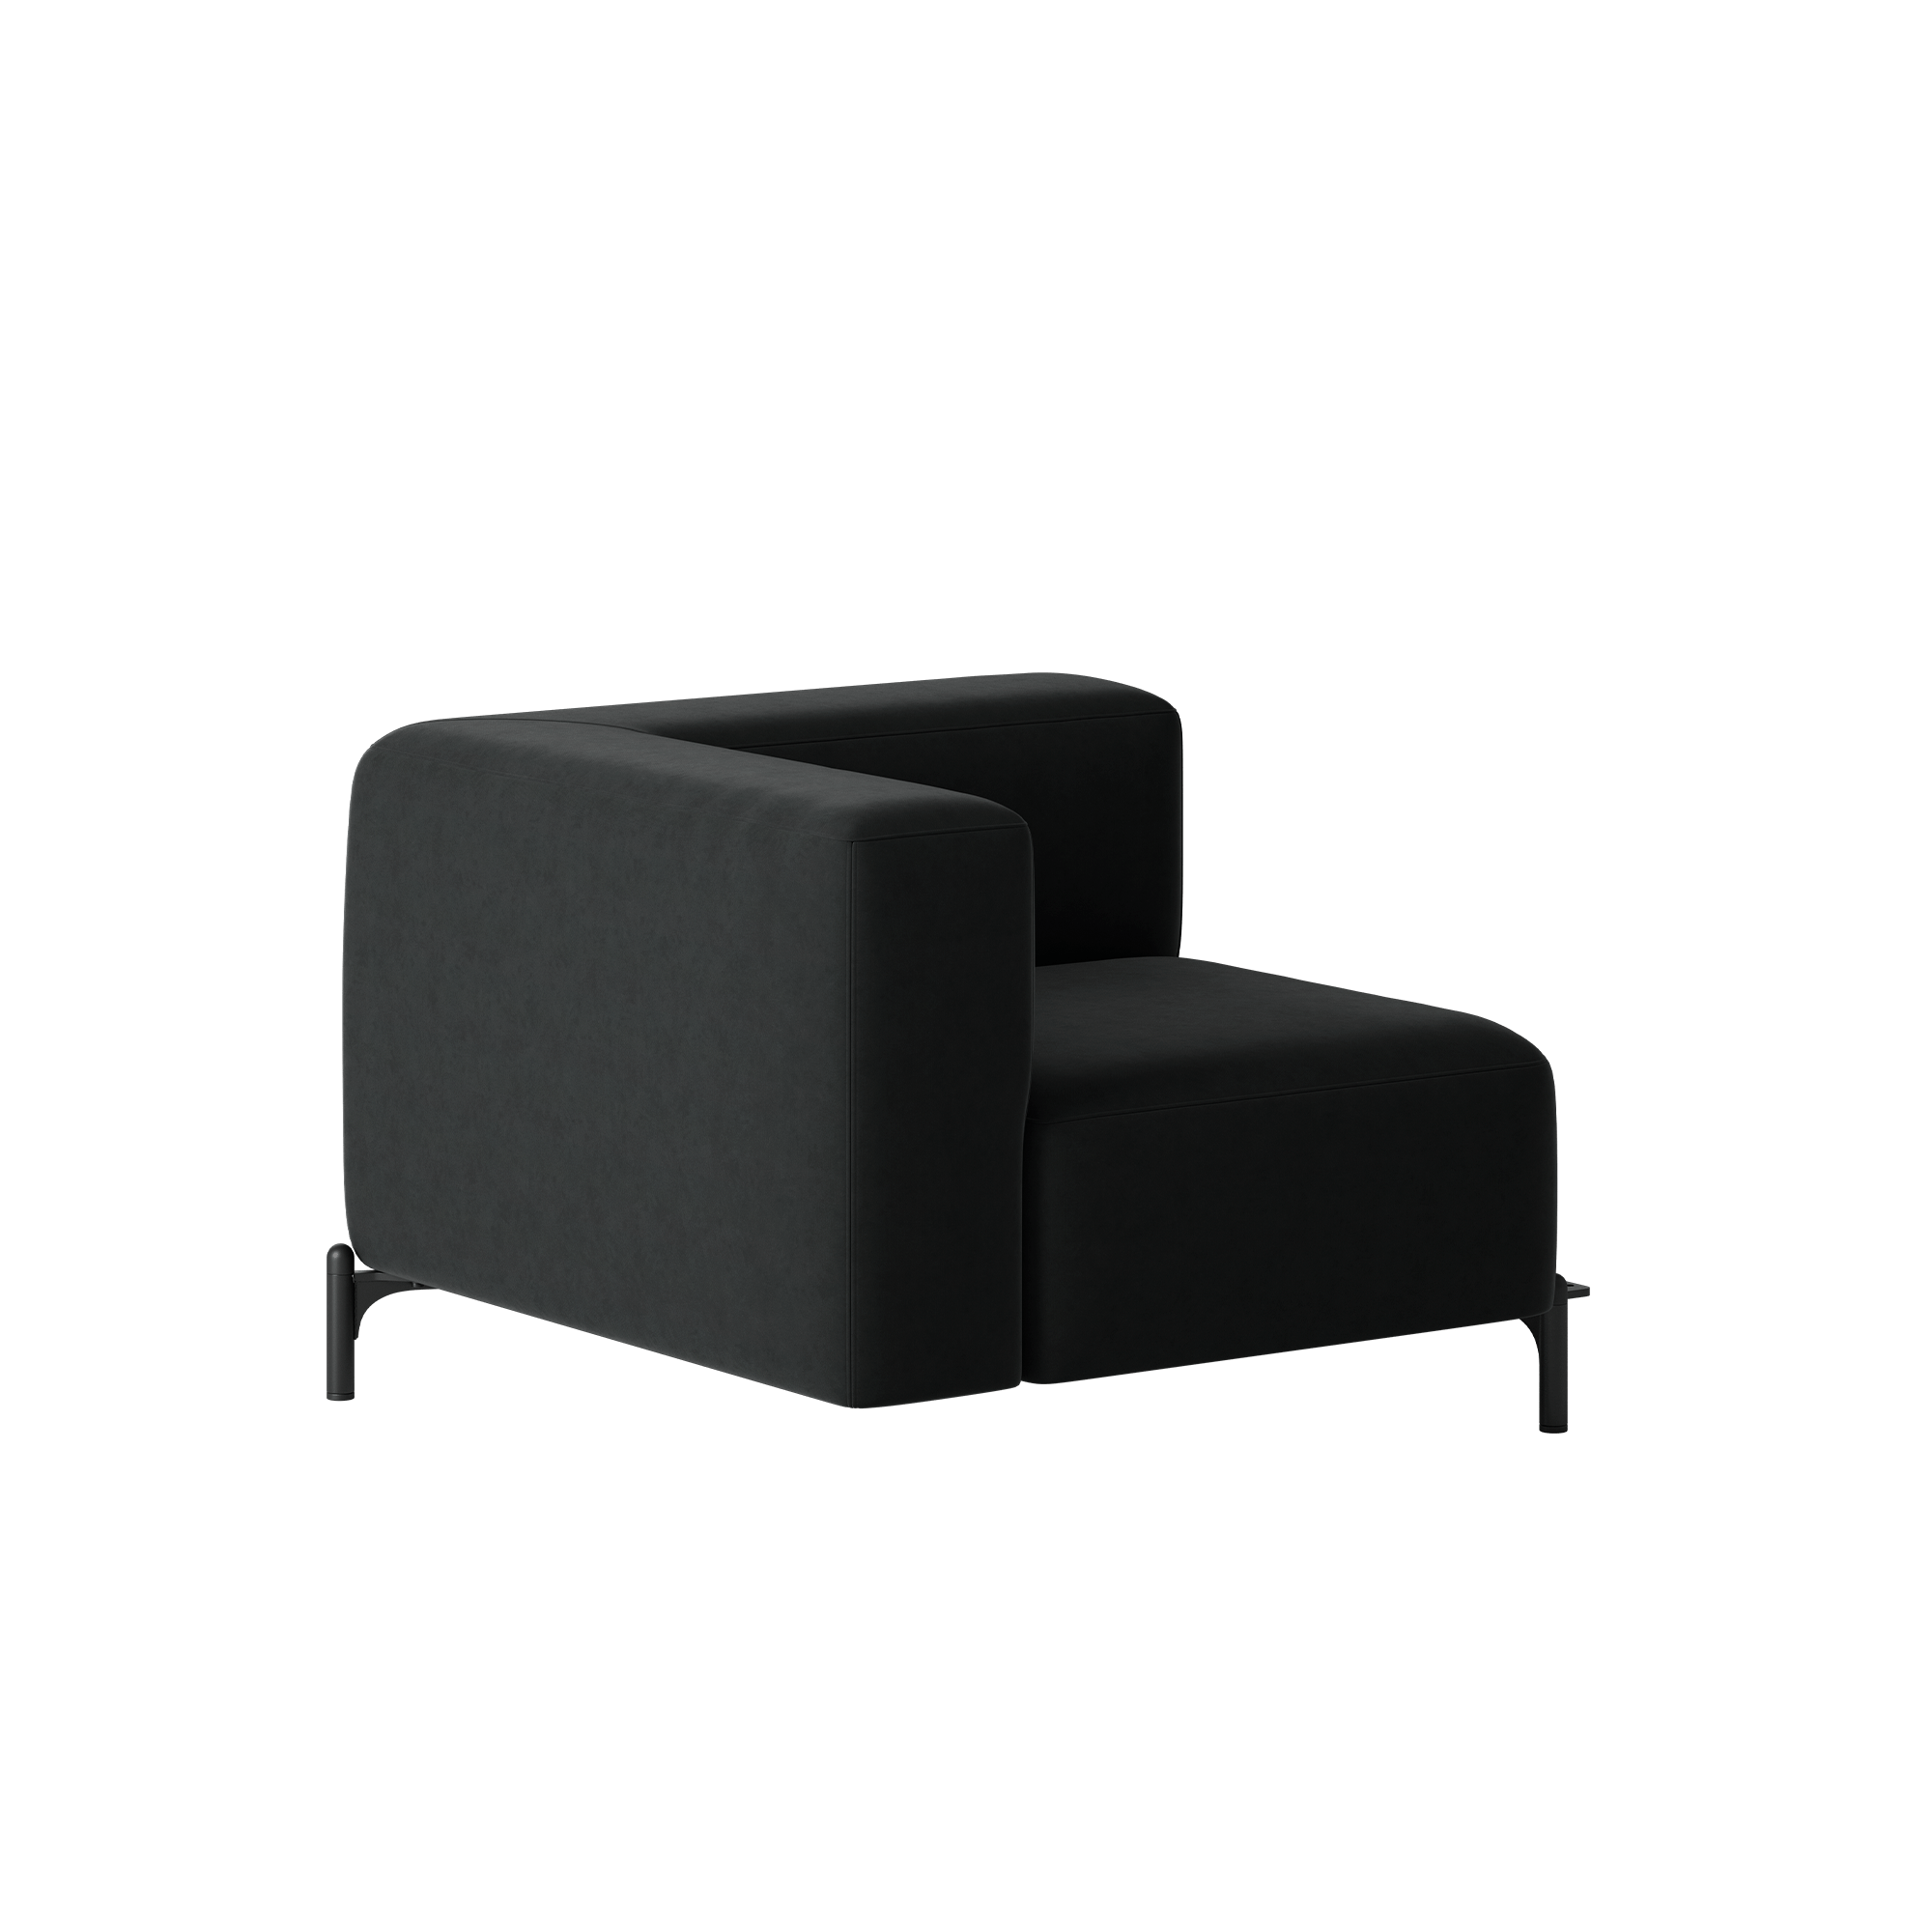 A black armchair